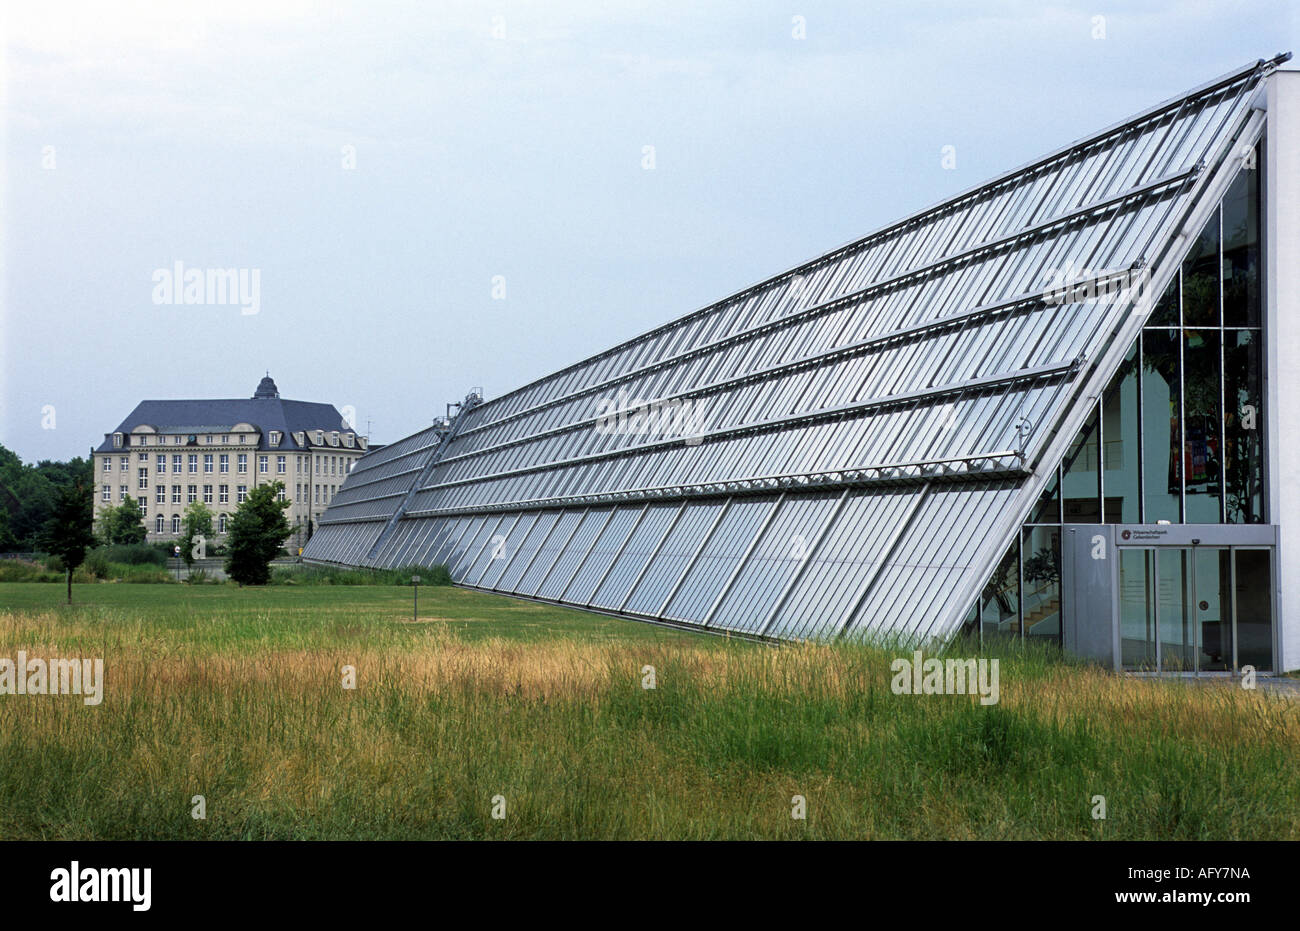 Die Rhein-Elbe Science Park, ein nachhaltiges Gebäude mit Sonnenkollektoren, Gelsenkirchen, Nordrhein-Westfalen, Deutschland. Stockfoto